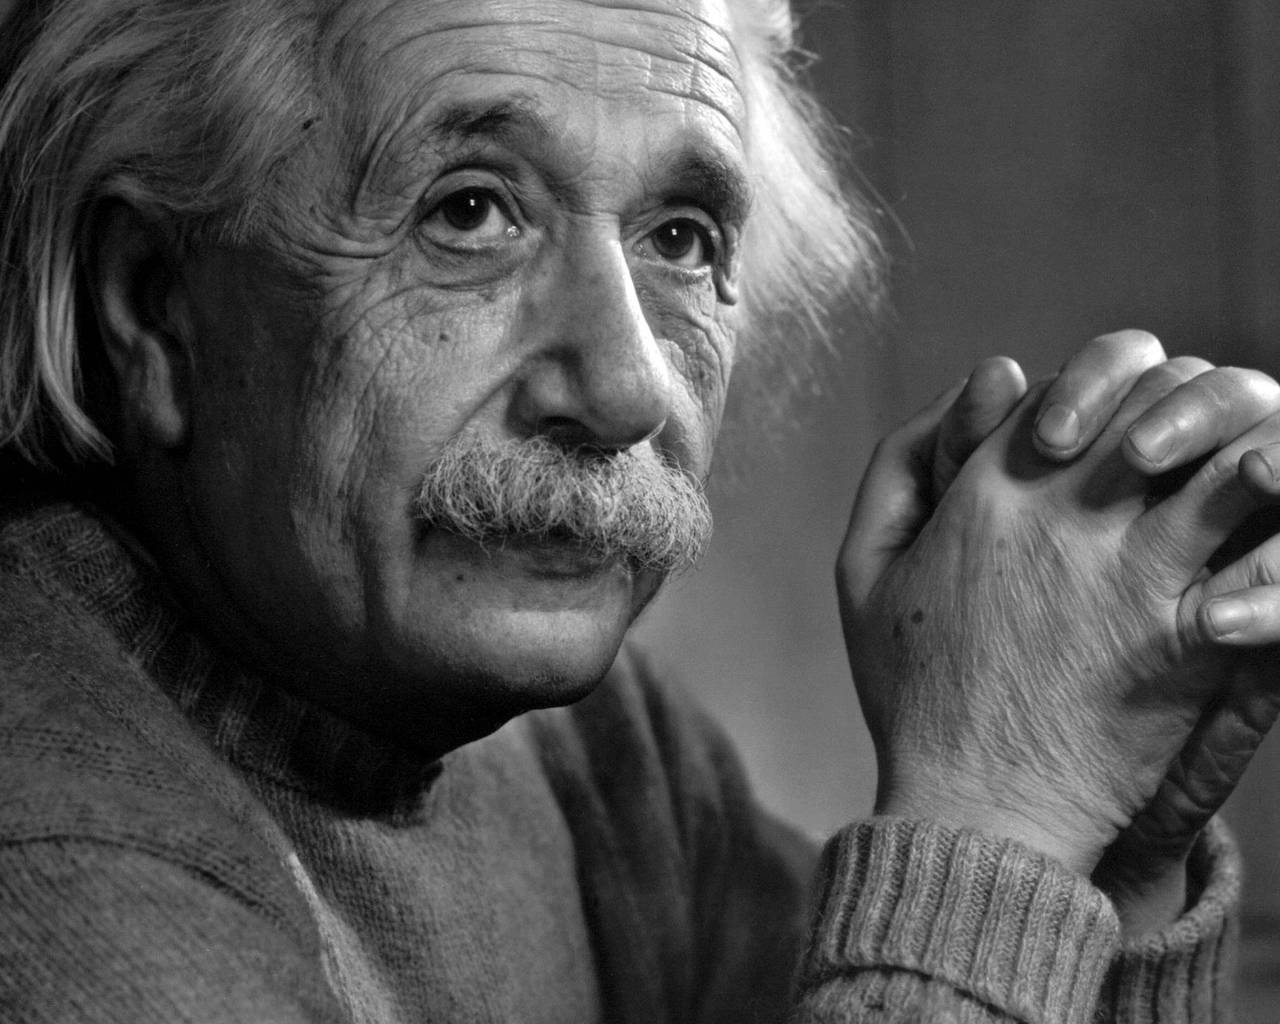 Albert Einstein Monochrome for 1280 x 1024 resolution